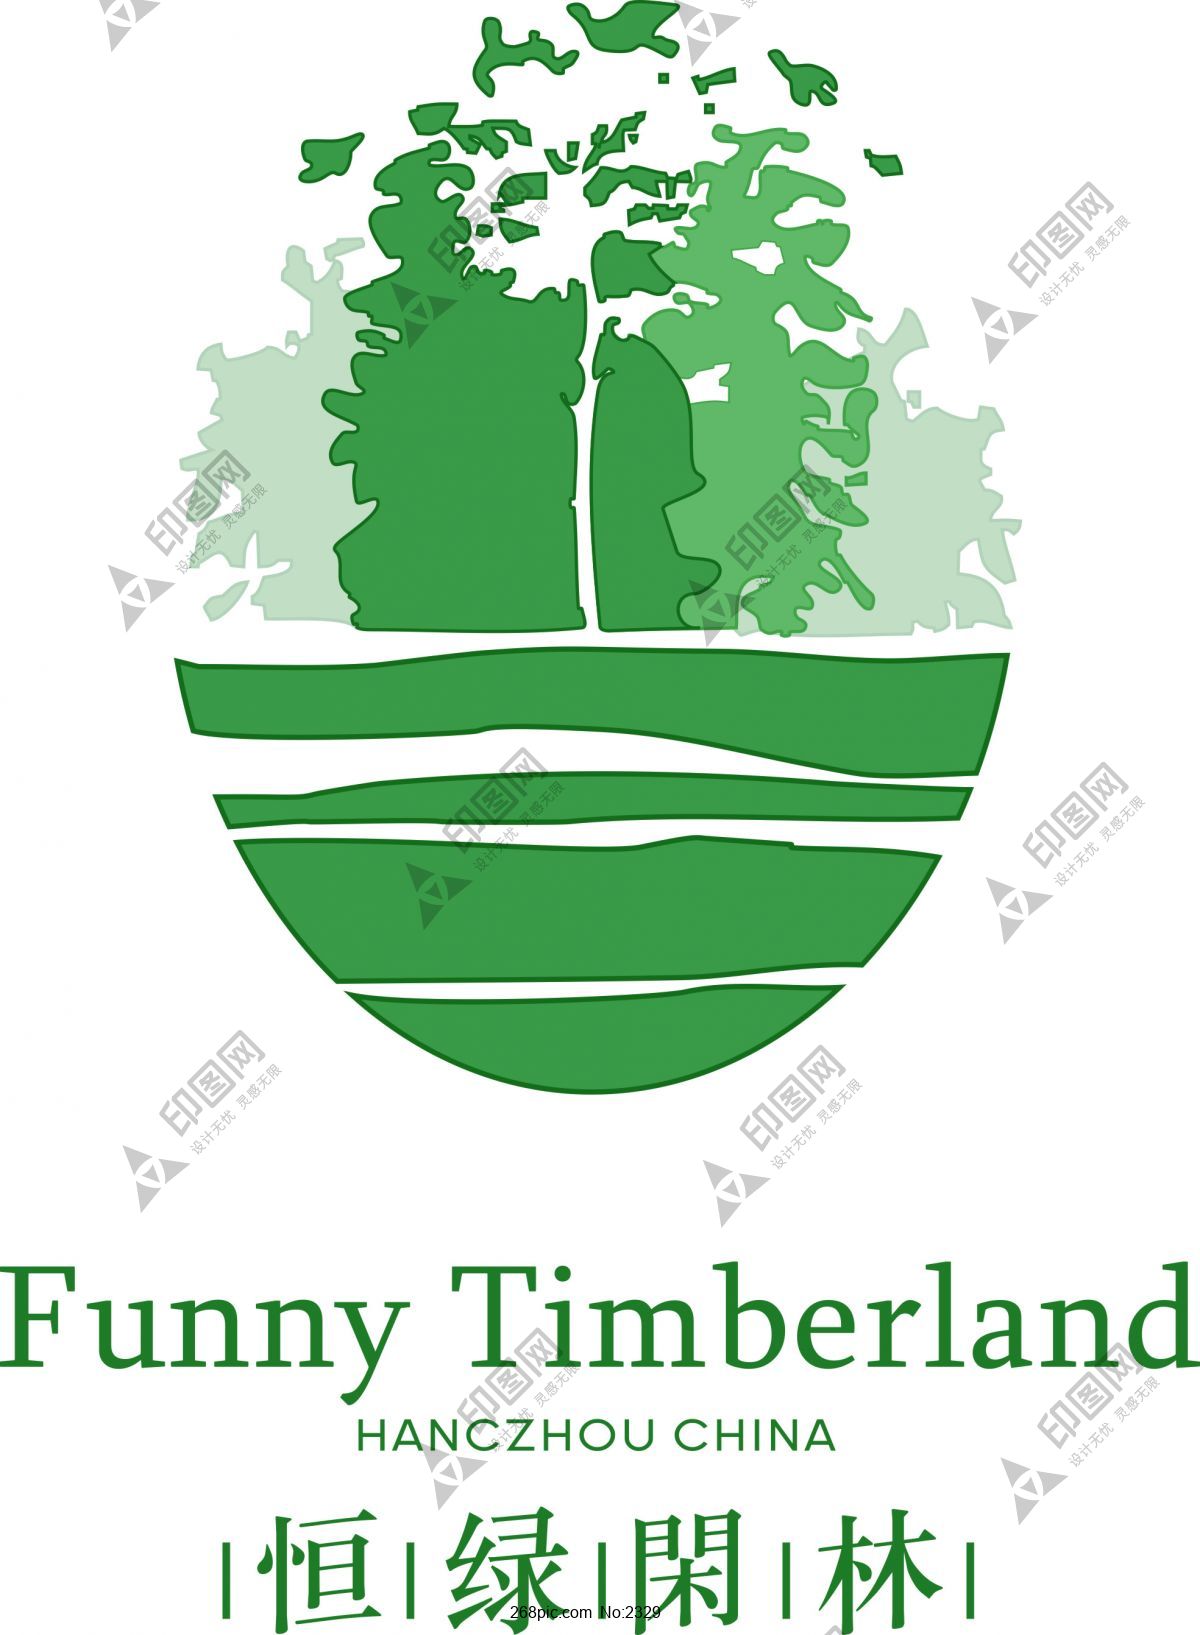 恒绿閉林Funny Timberland